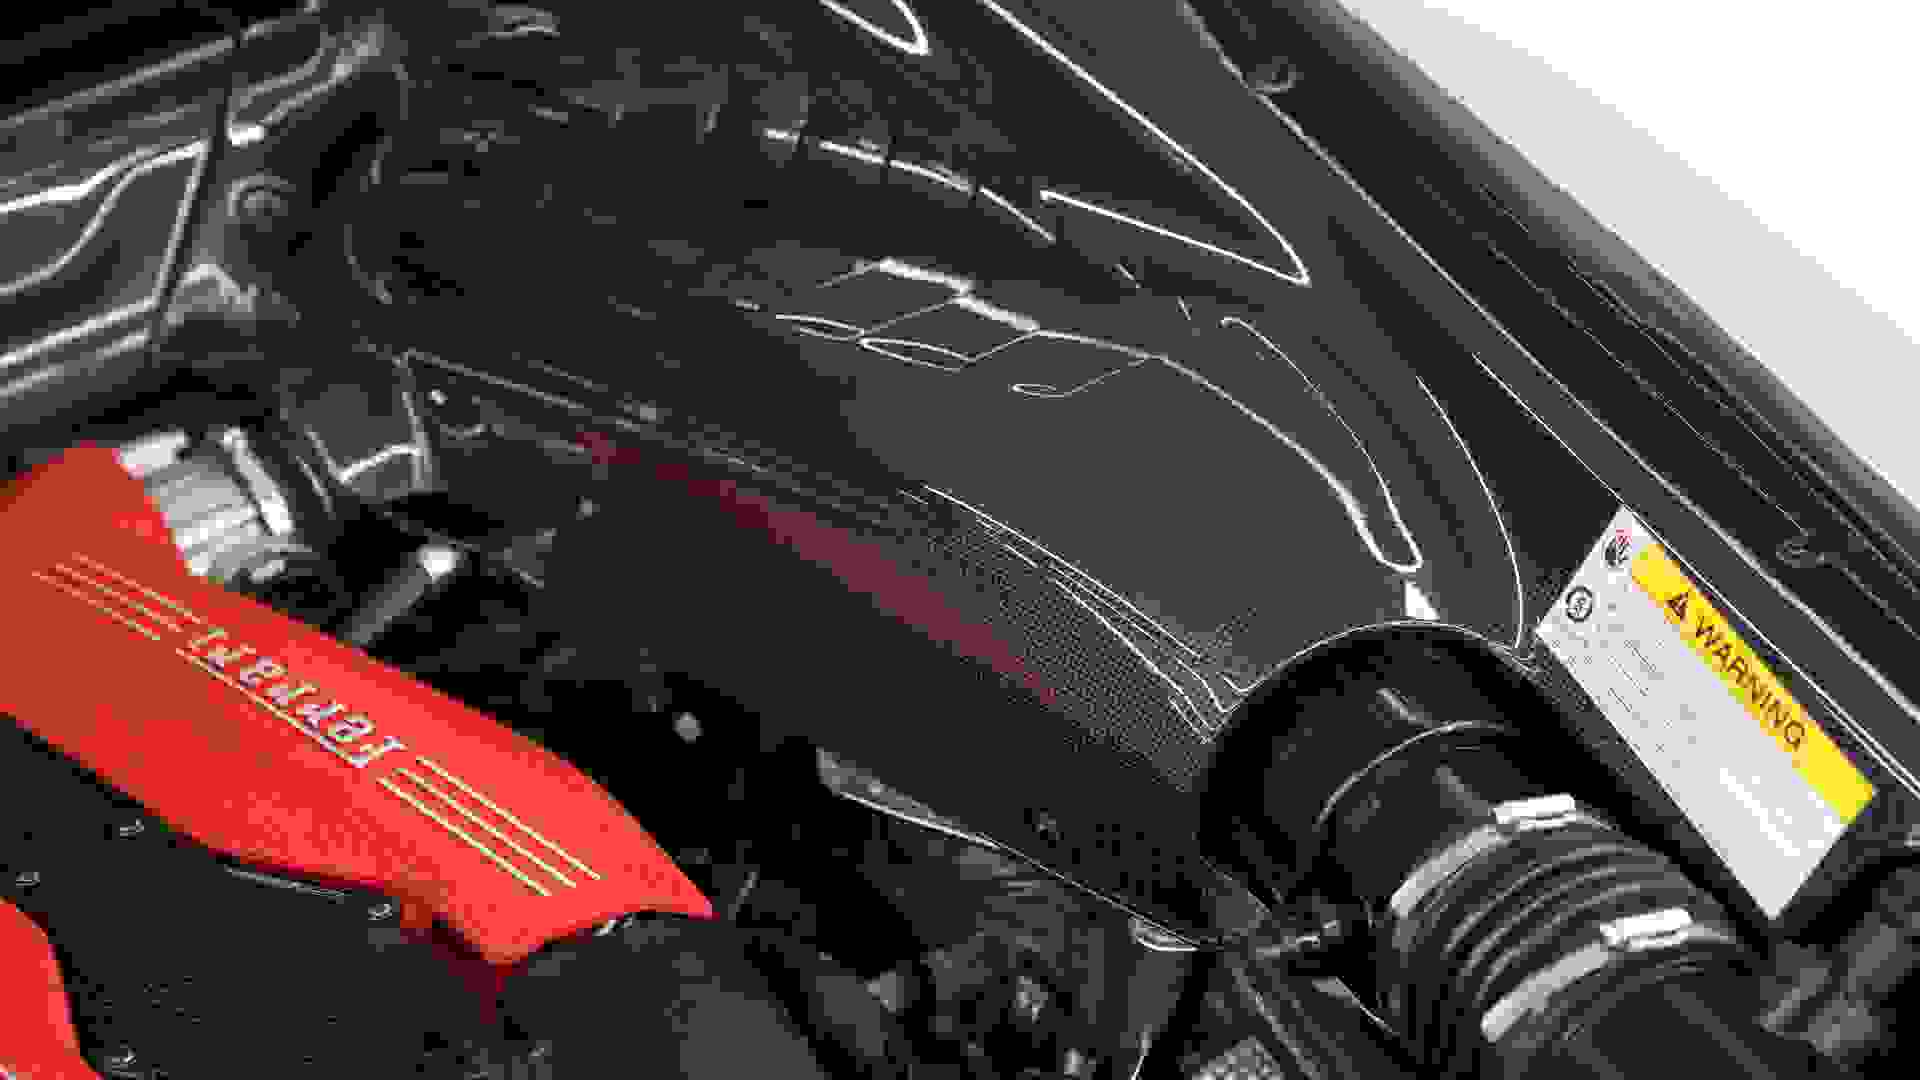 Ferrari 488 Photo 0a73eee6-9d03-48e0-897a-066d774d4526.jpg